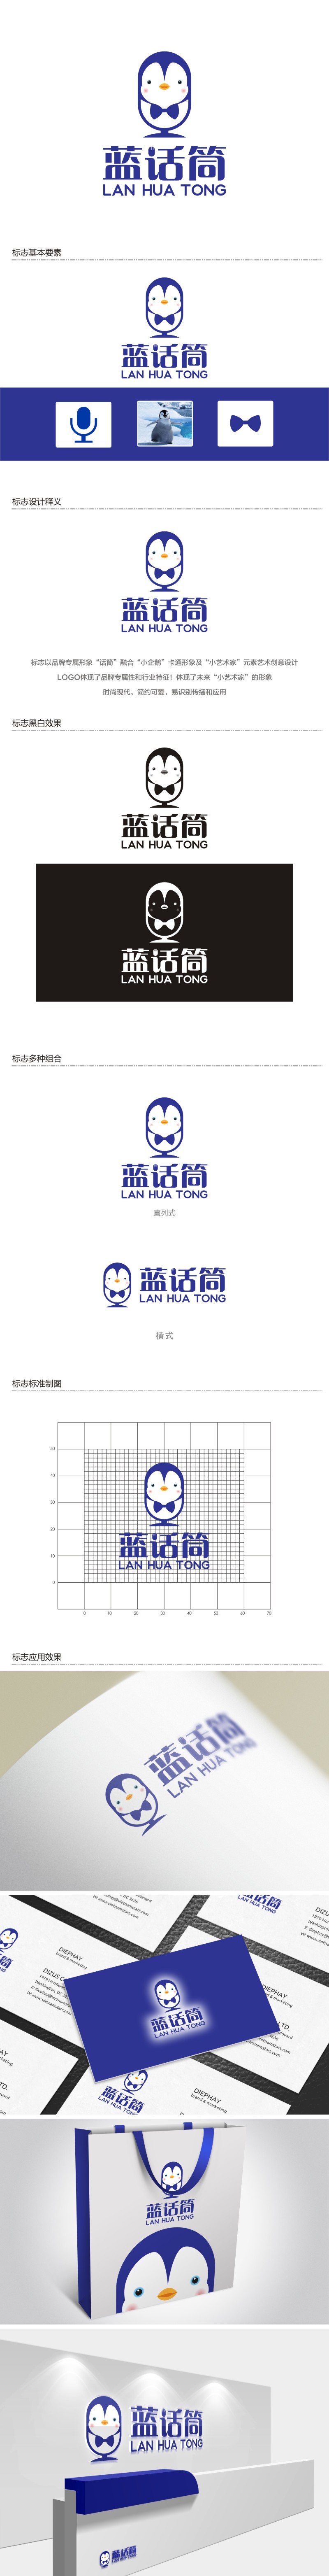 陈国伟的蓝话筒【重新整理设计需求】logo设计